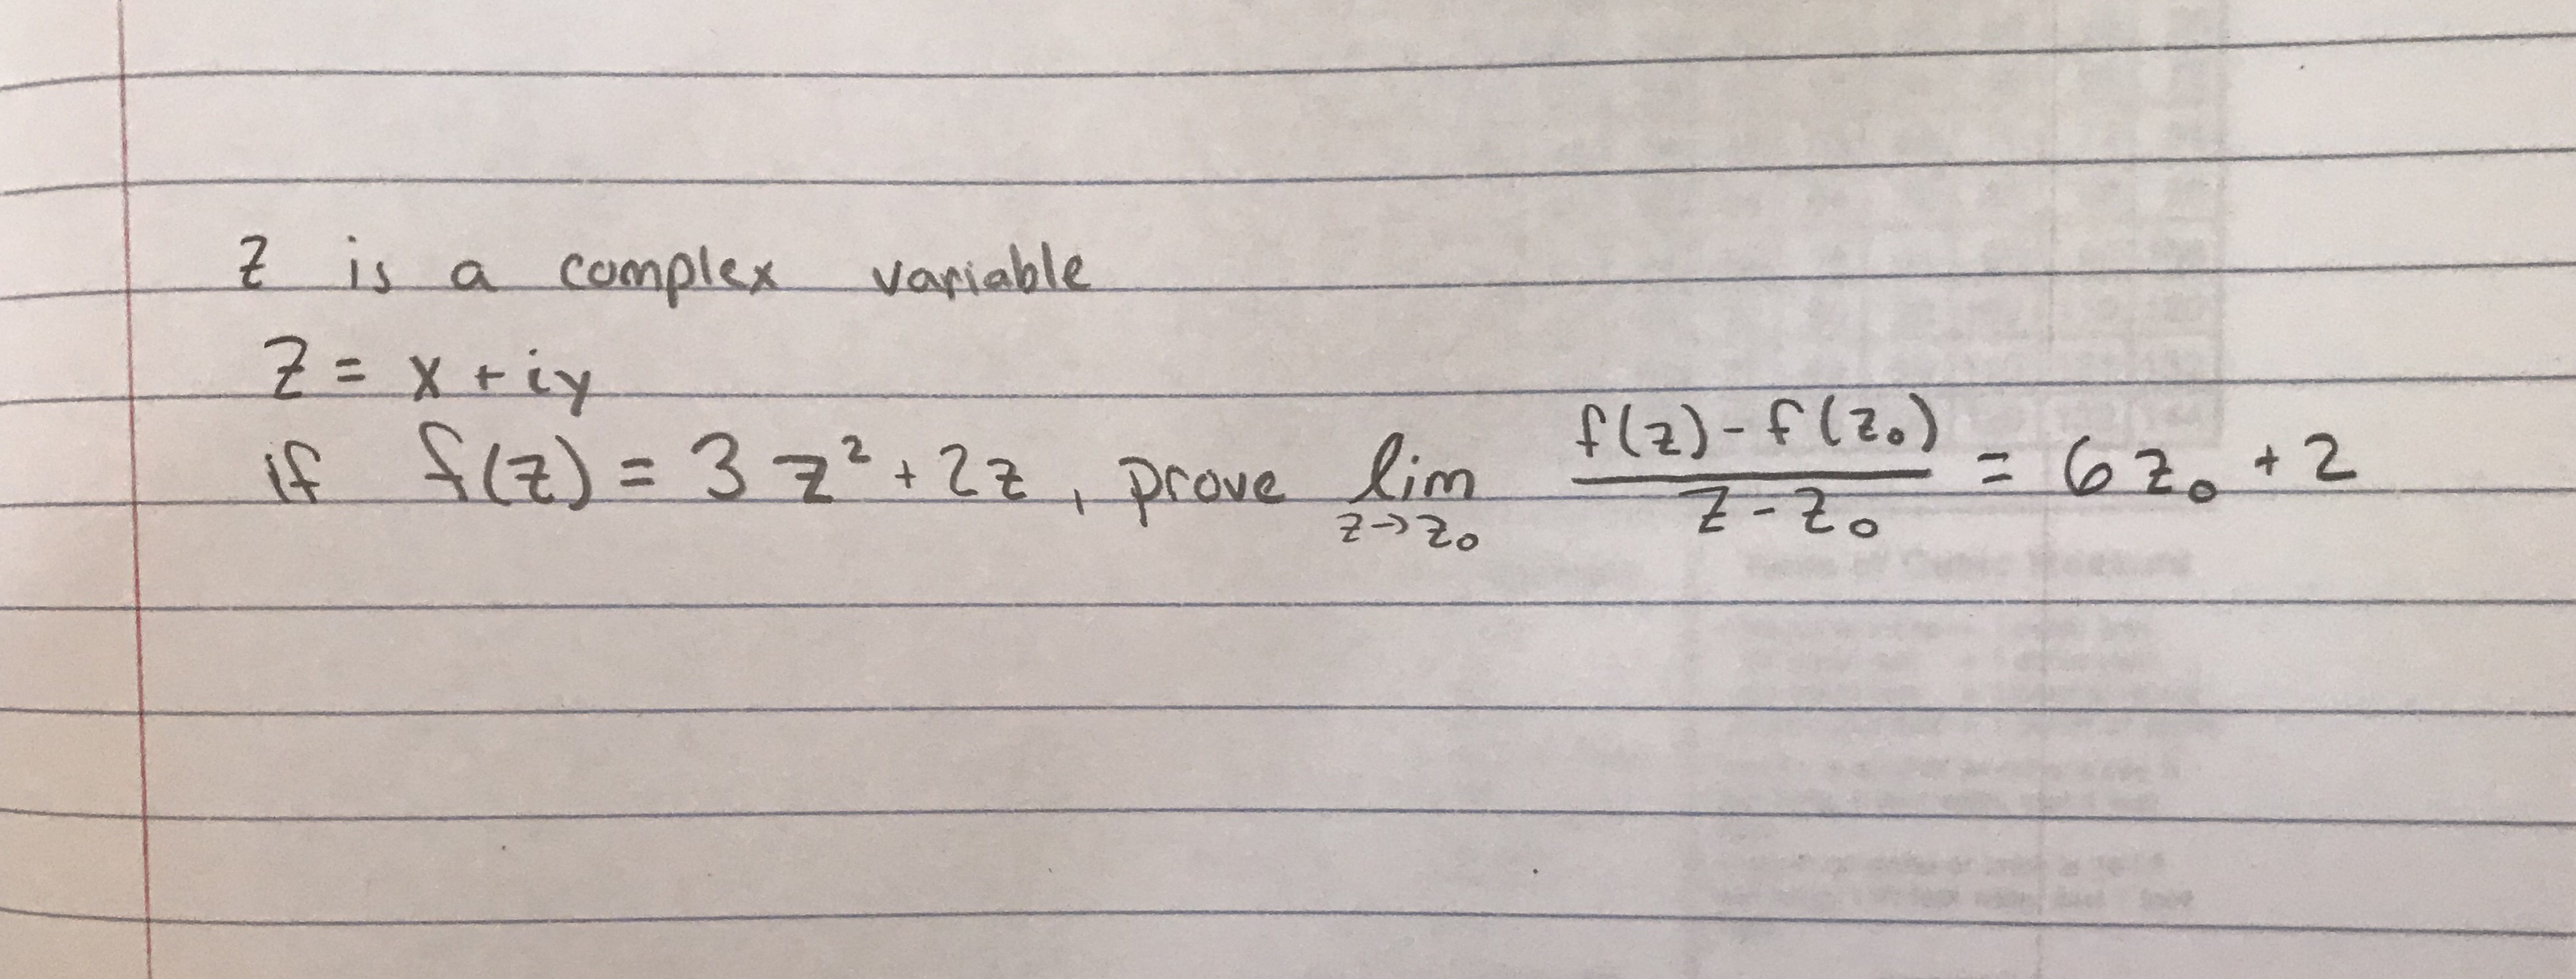 2is a Complex Vapiable
ie-S(포)-32.tat-trave2f2.ㅡ+下を
2
군-)20
